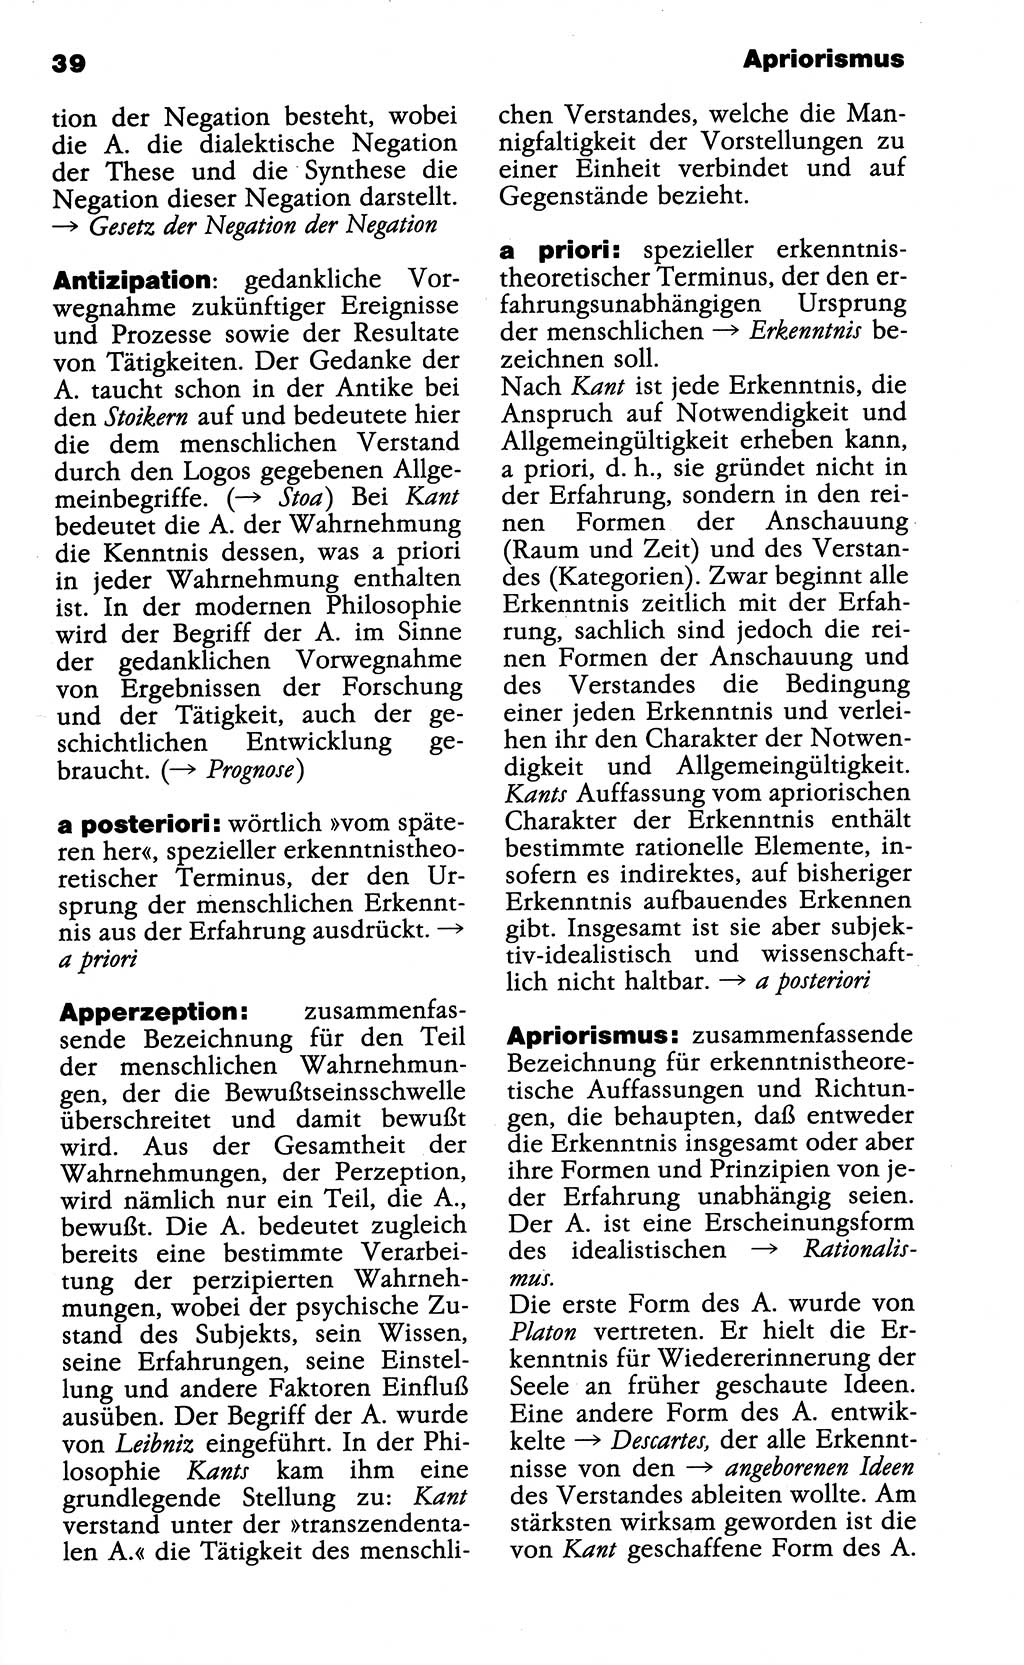 Wörterbuch der marxistisch-leninistischen Philosophie [Deutsche Demokratische Republik (DDR)] 1985, Seite 39 (Wb. ML Phil. DDR 1985, S. 39)